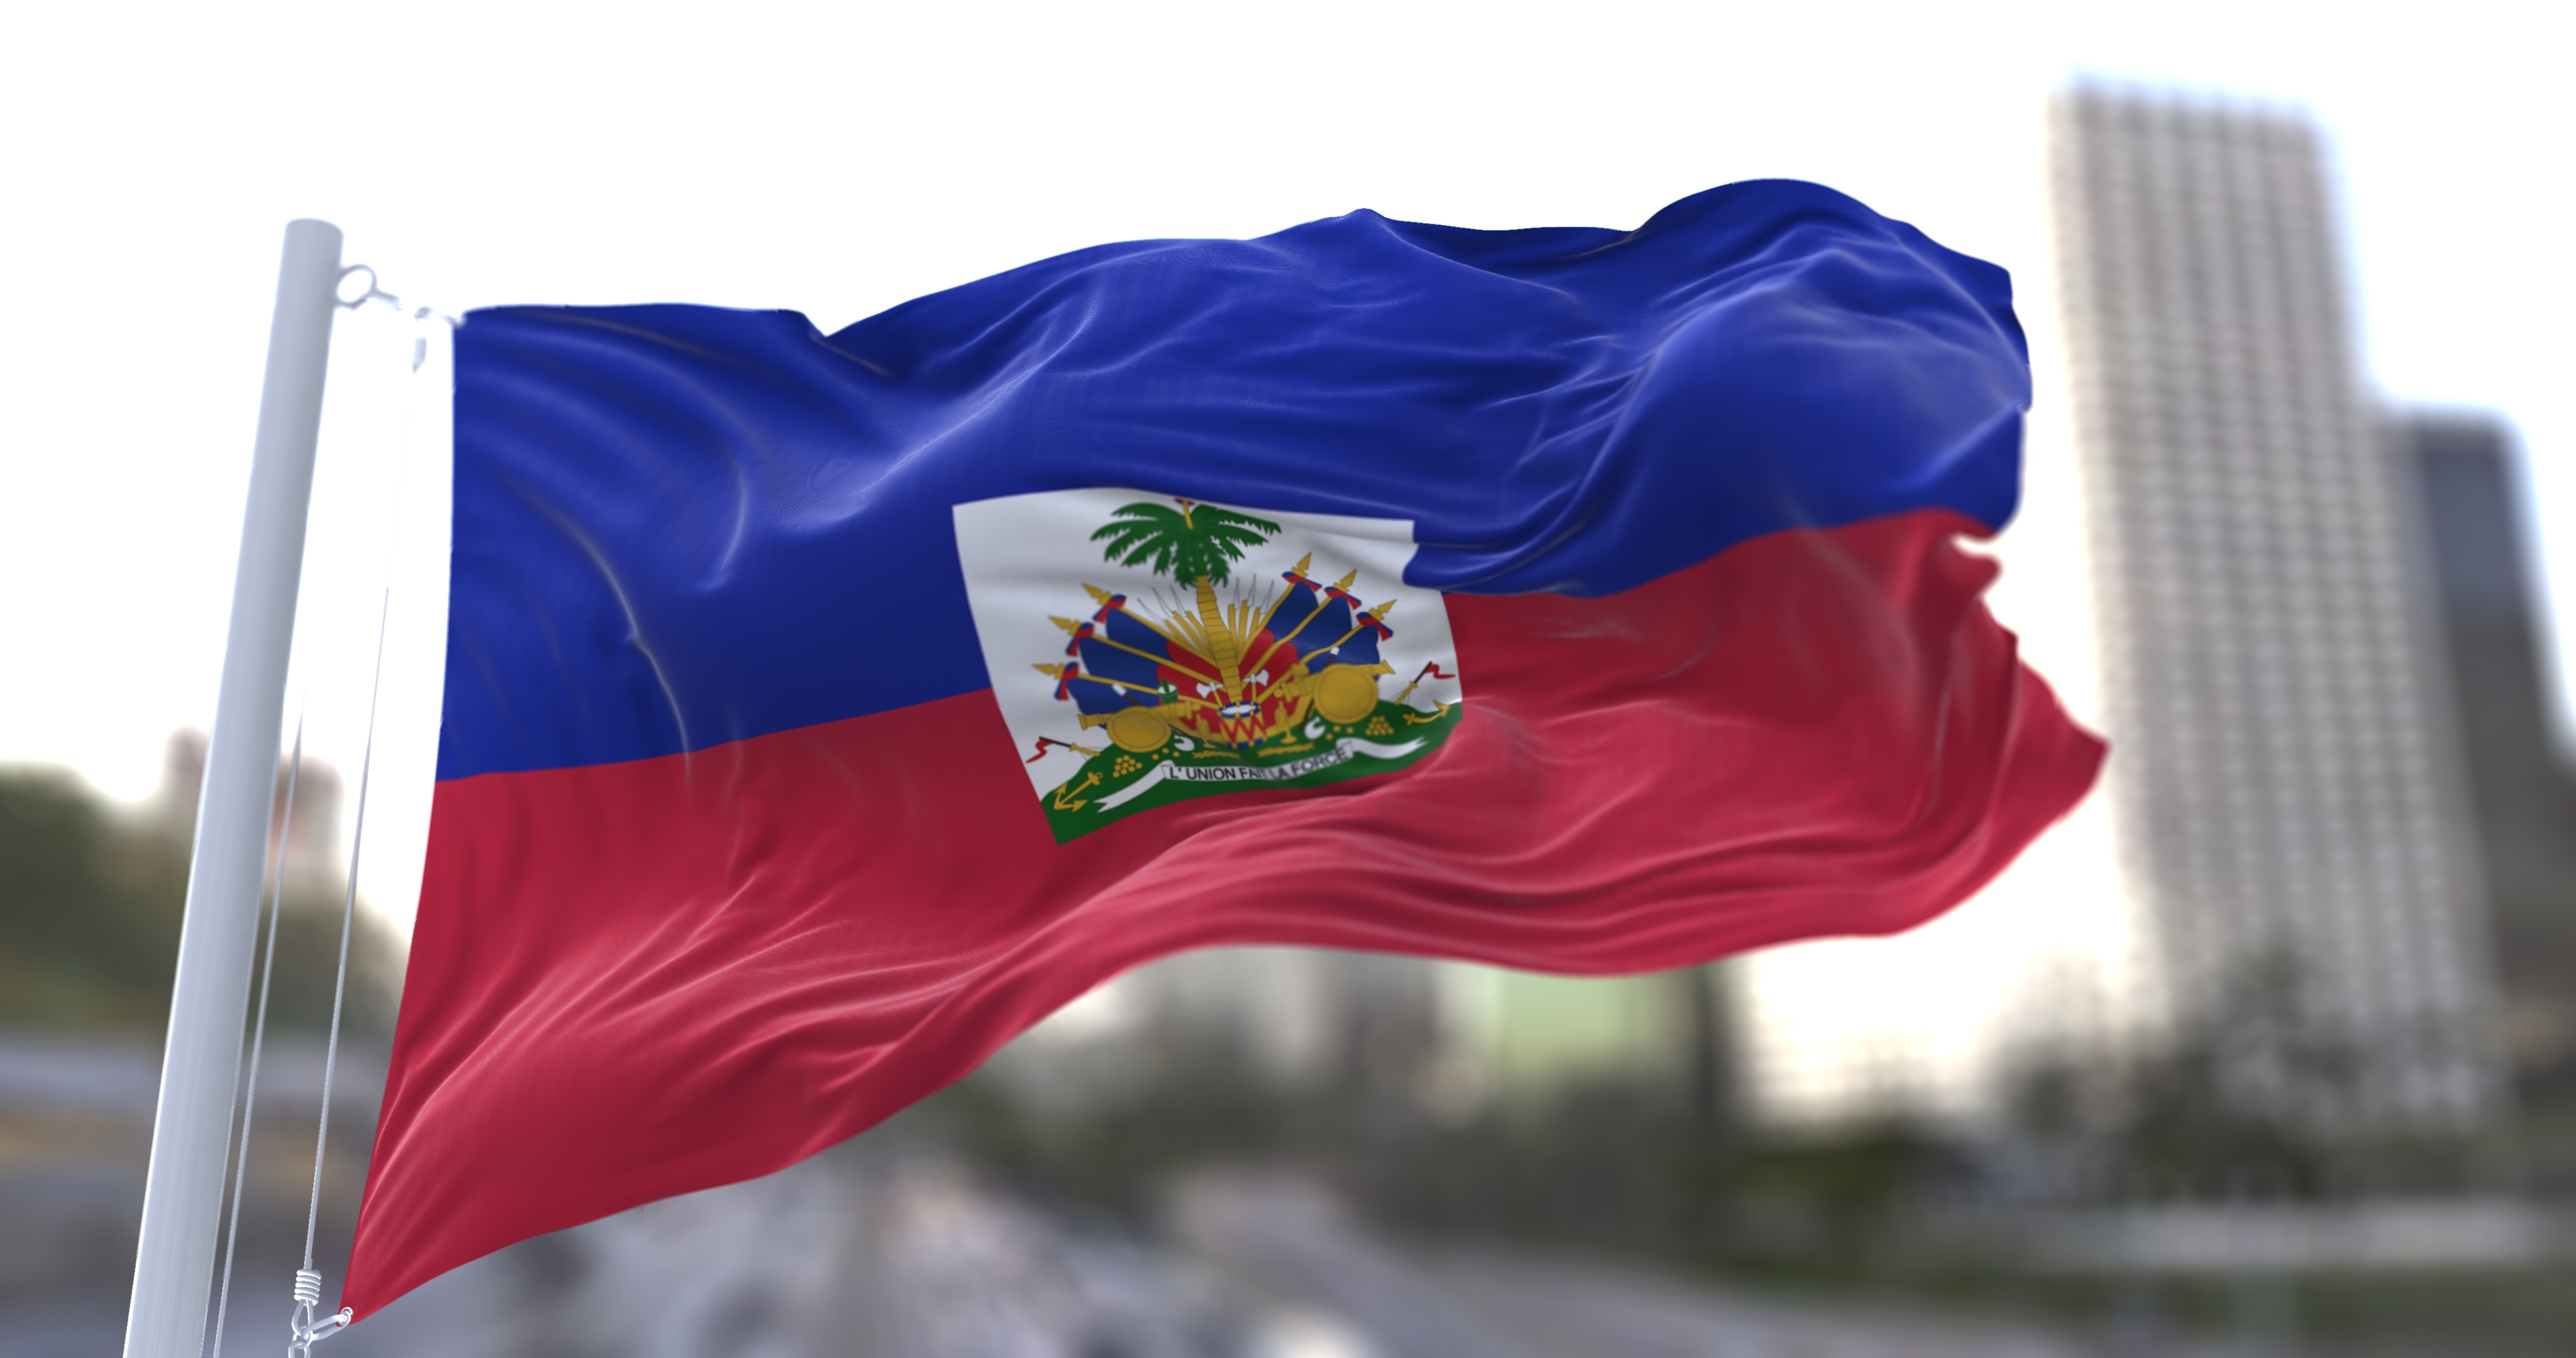     Le responsable de l'Académie nationale de police d'Haïti a été tué par balle

